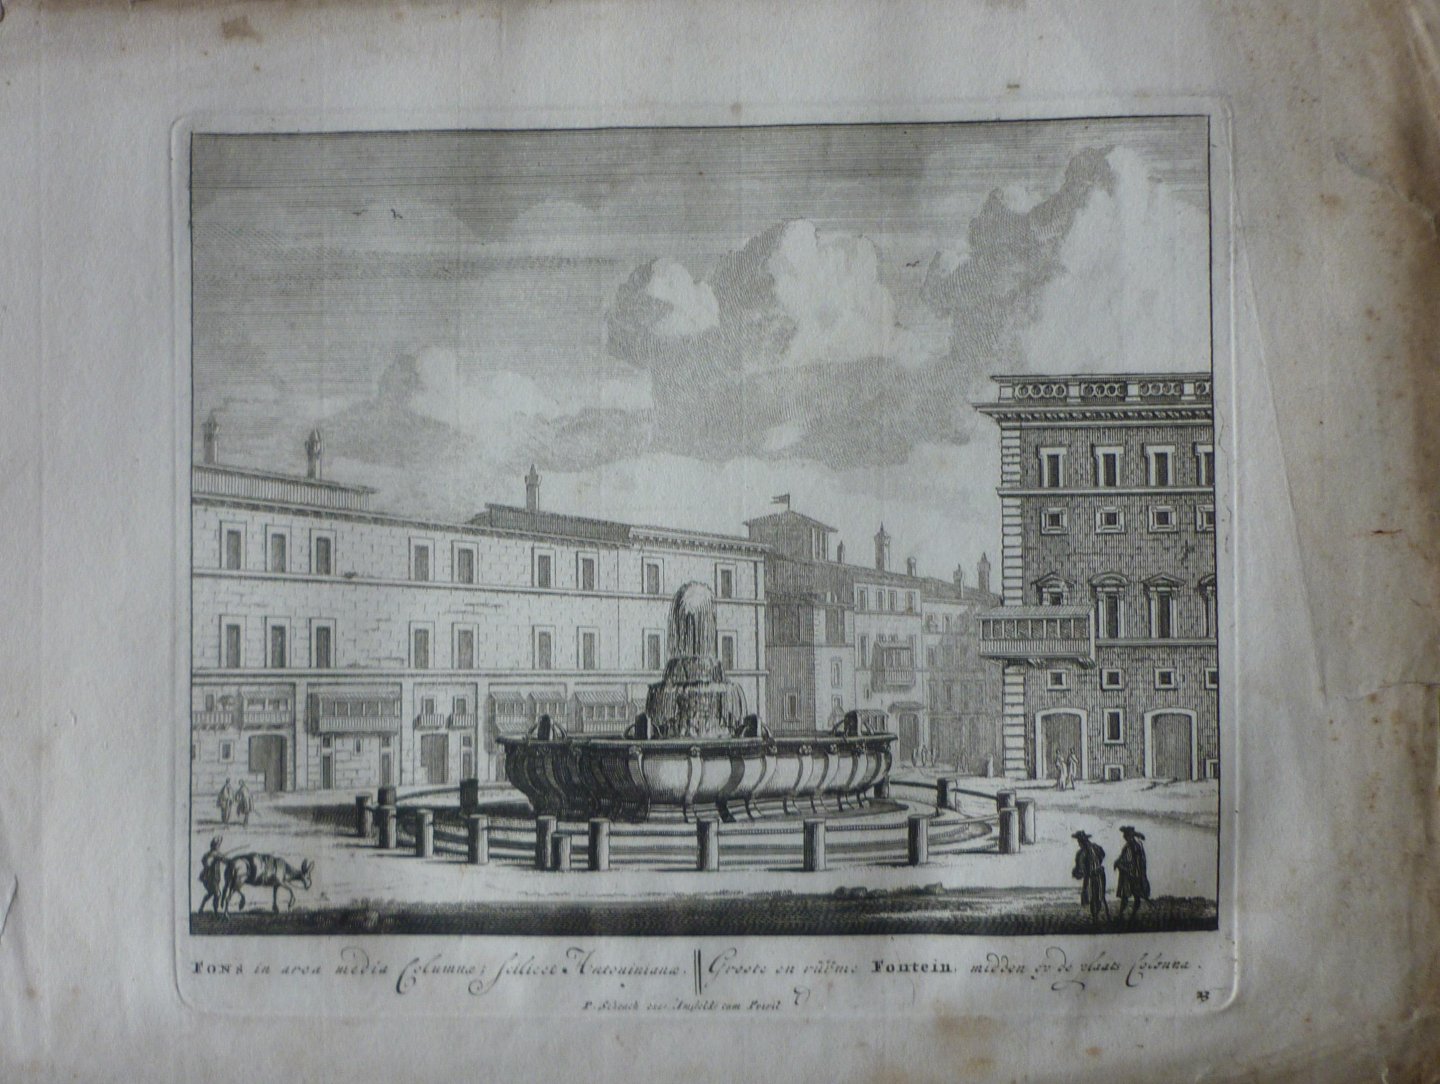 Schenck, Petrus [Pieter Schenk] - Groote en ruime Fontein midden op de plaats Colonna 23. Originele kopergravure.